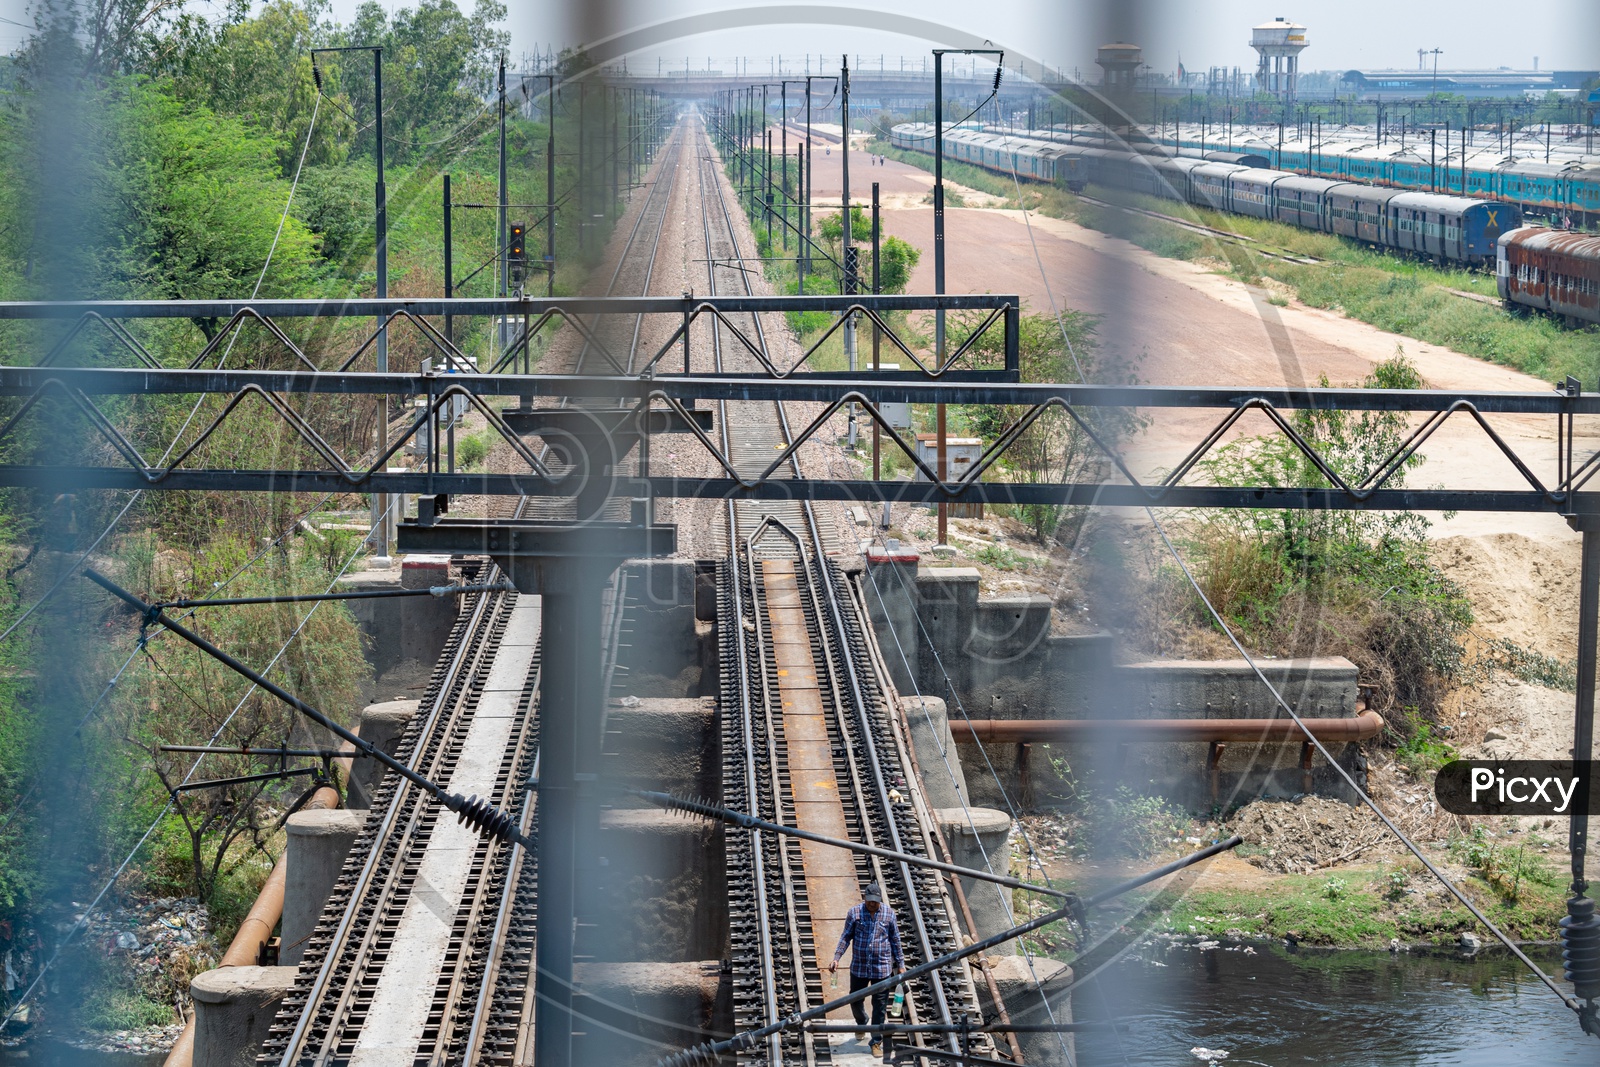 Railway Track and Anand Vihar Rail Yard, Delhi